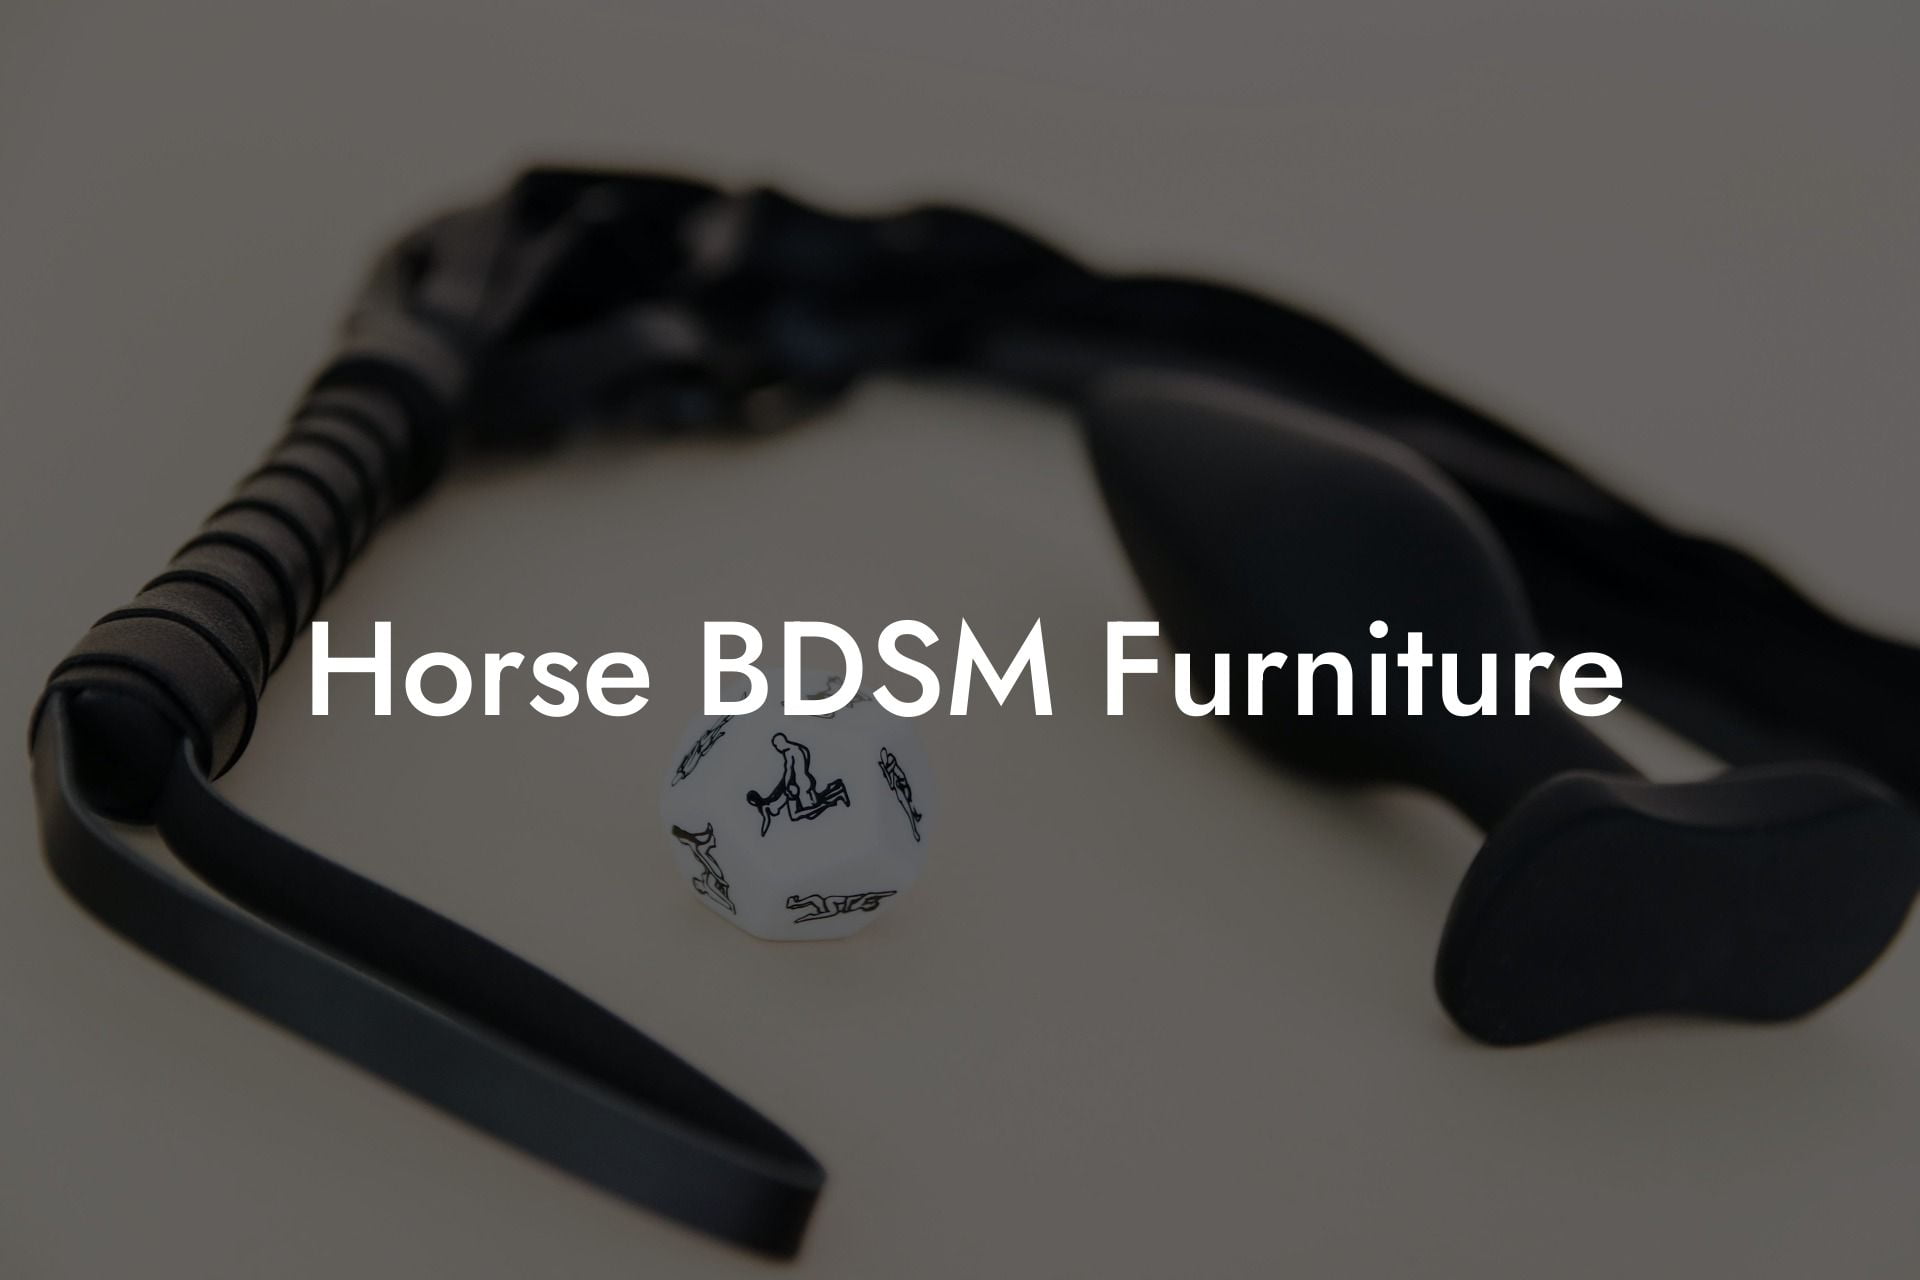 Horse BDSM Furniture